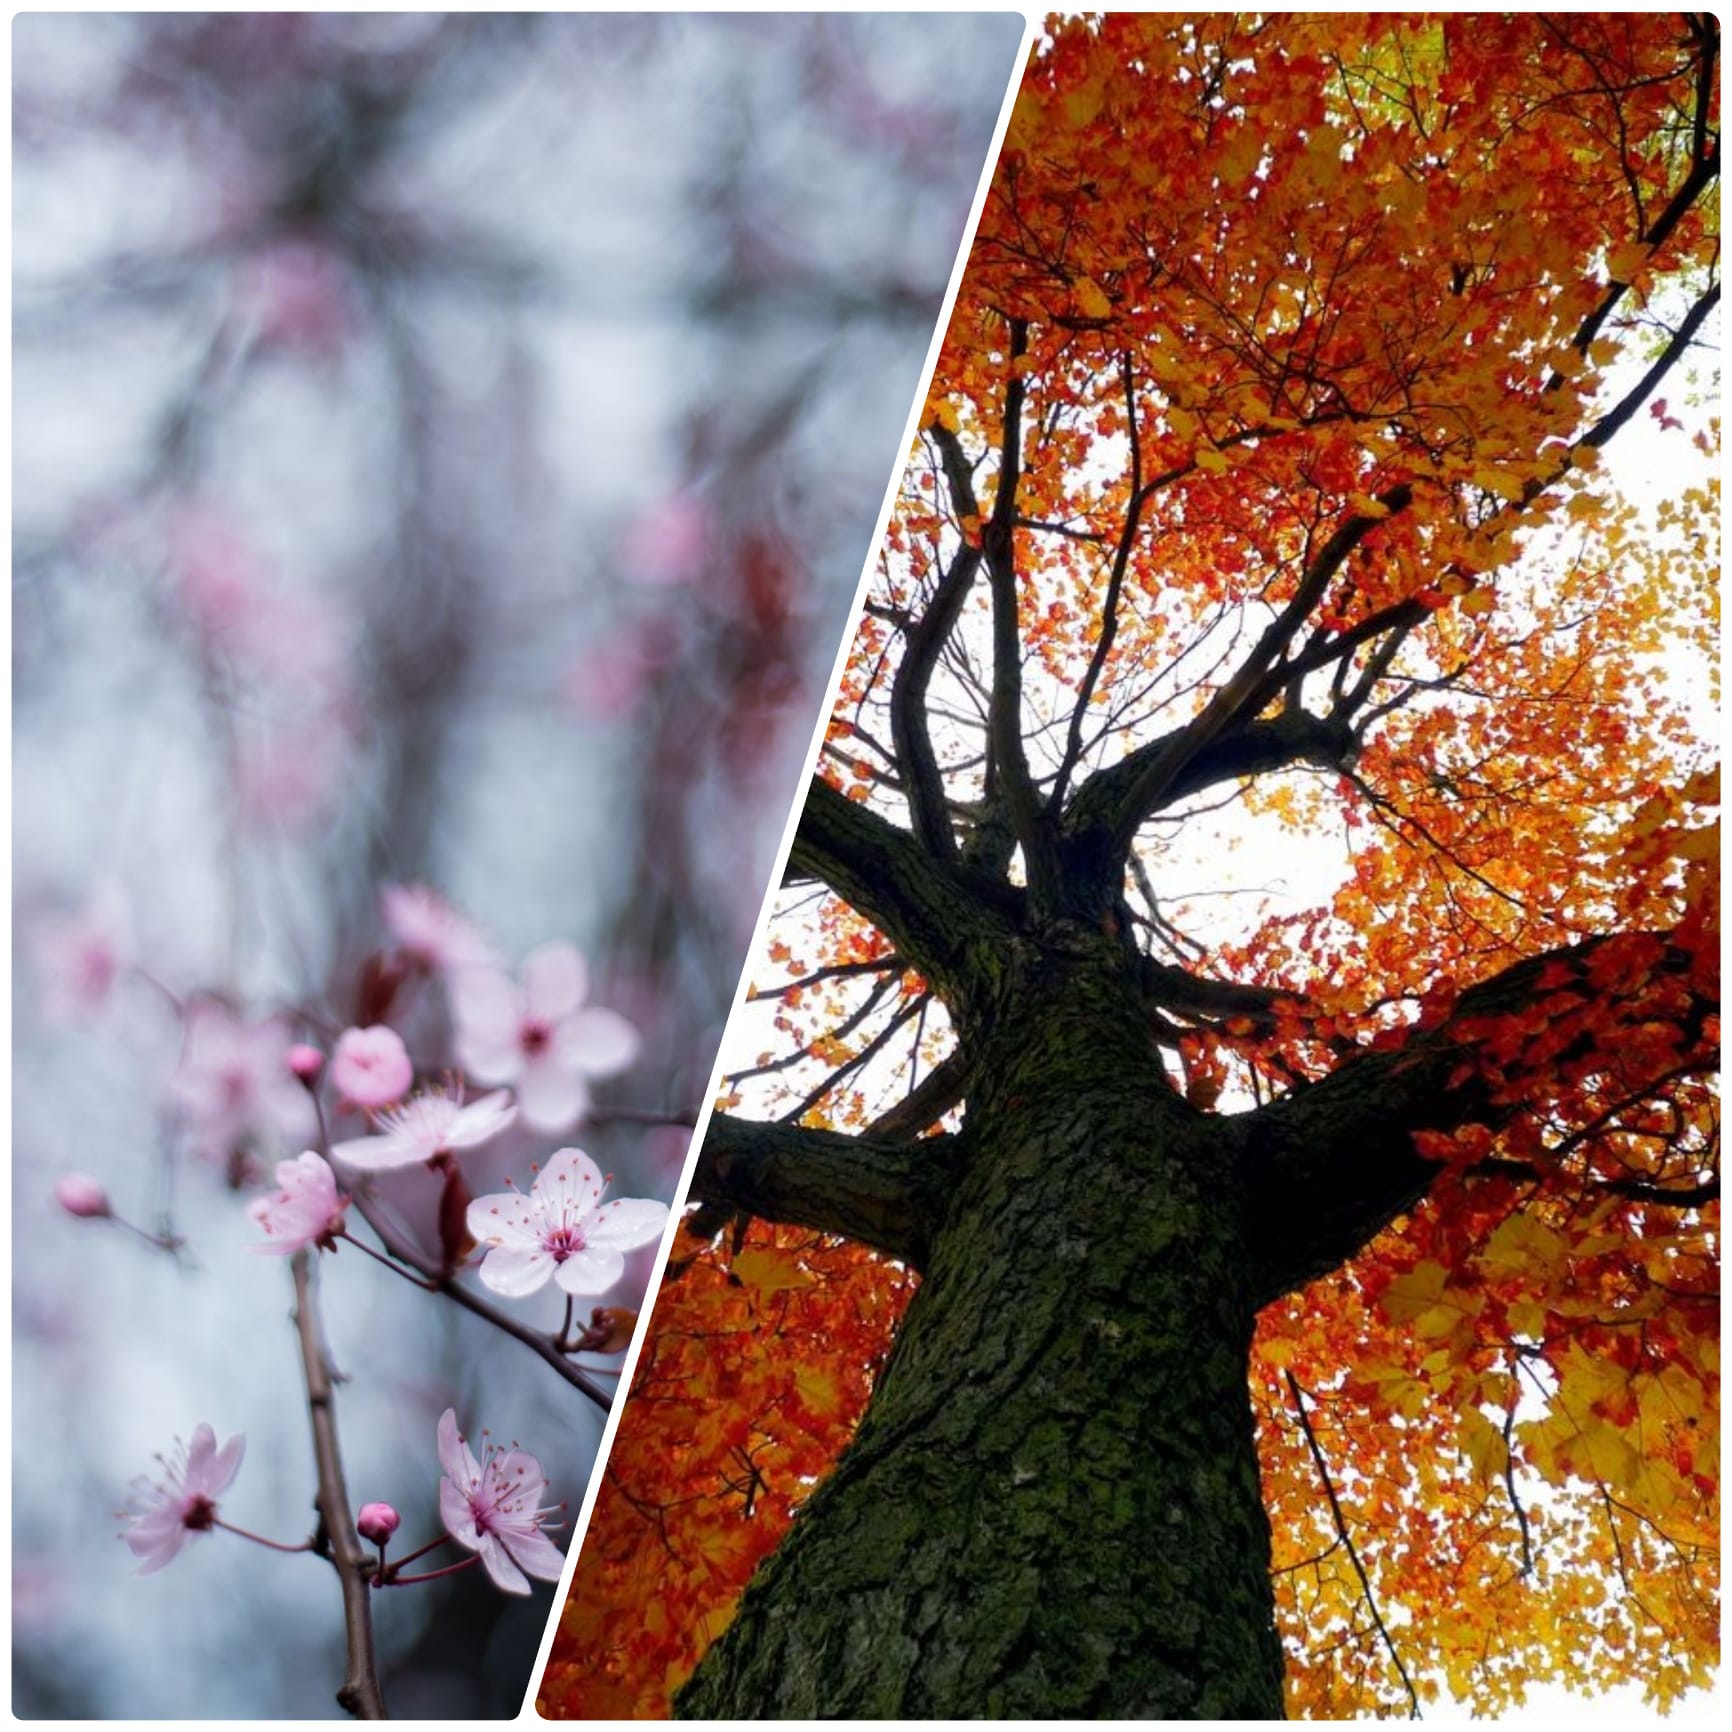 Primavera e autunno in simbiosi con la natura? Il Giappone ne è un esempio  - La scuola fa notizia